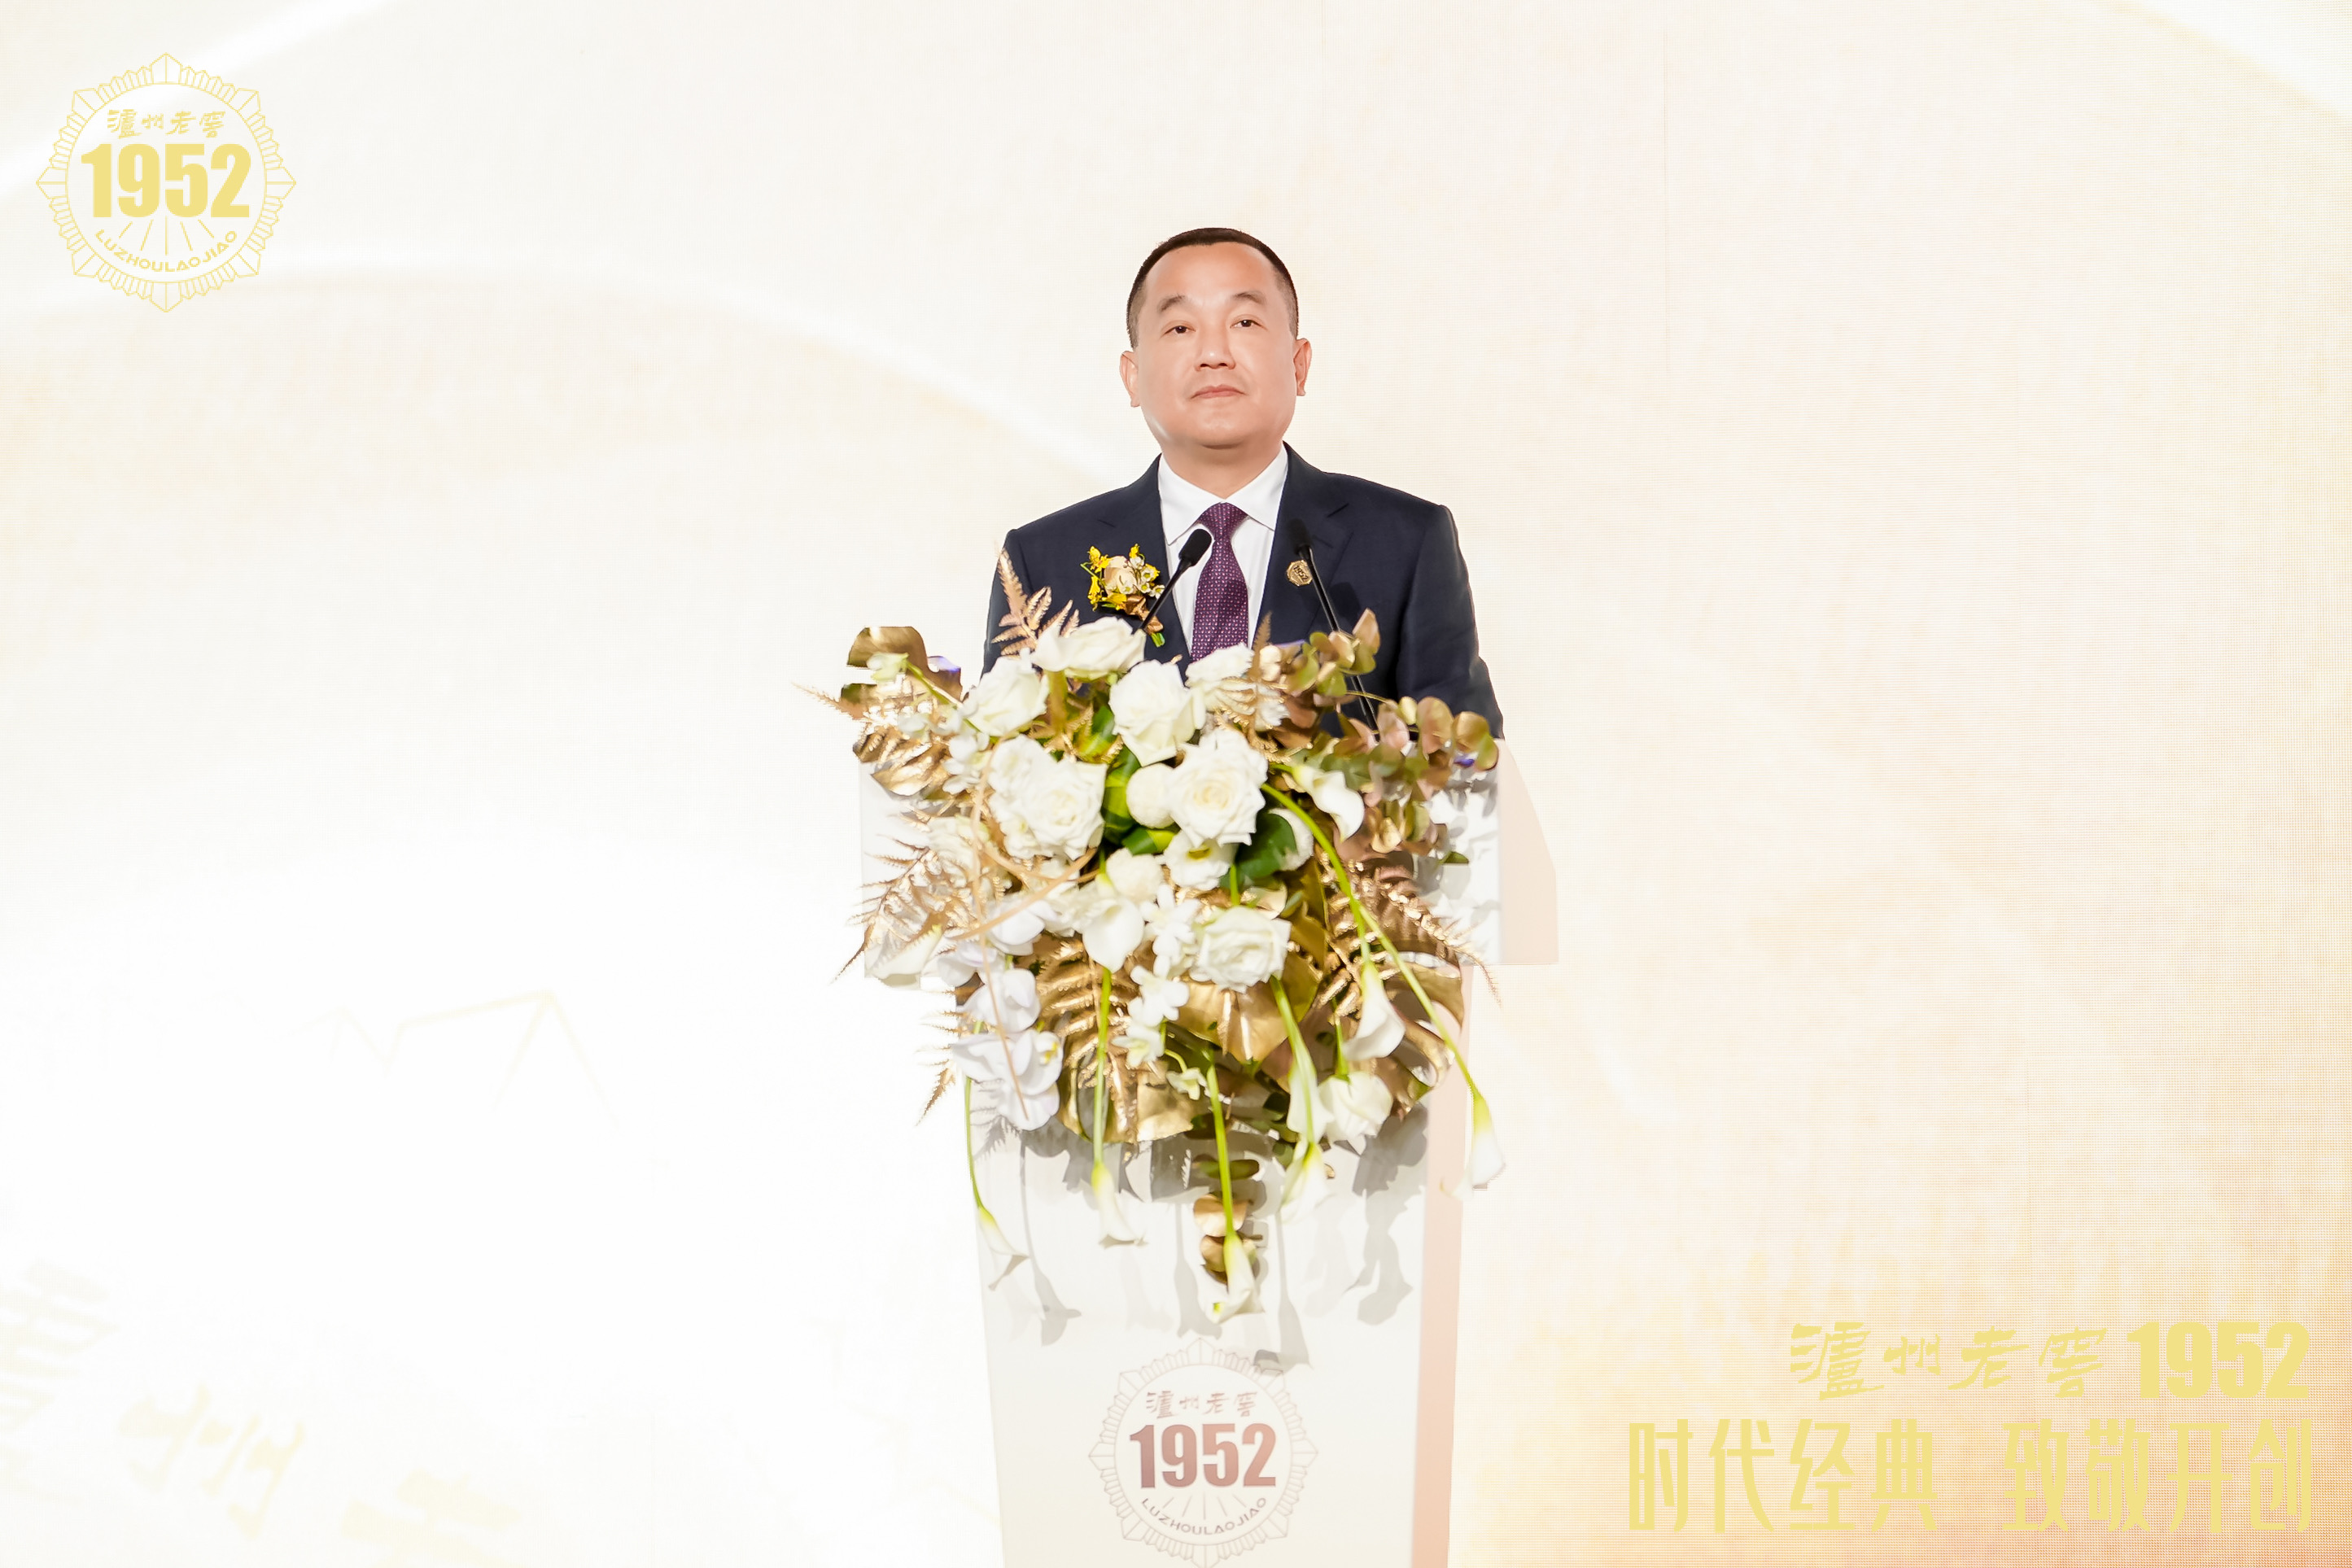 泸州老窖股份有限公司党委书记,董事长刘淼在发布会上致辞